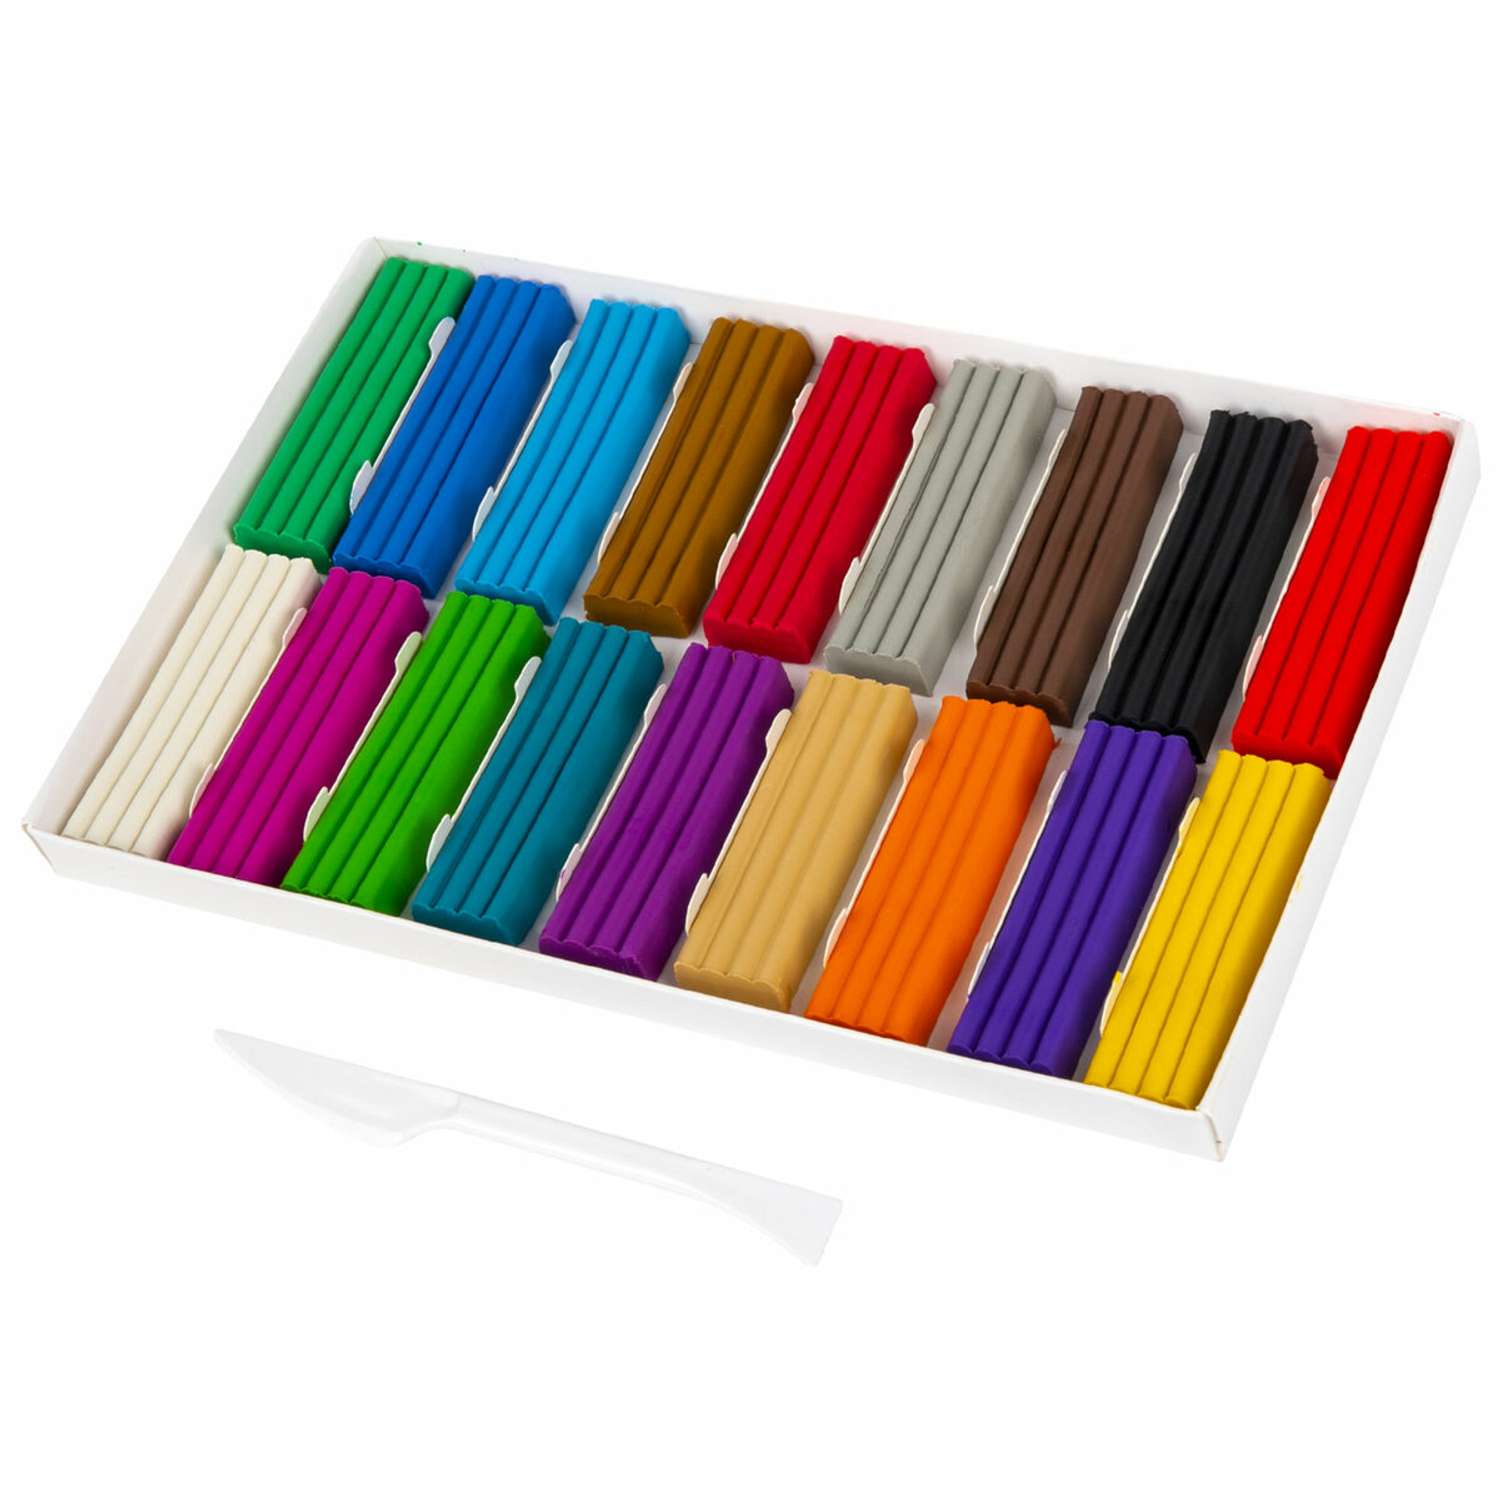 Пластилин классический Brauberg для лепки набор для детей 18 цветов - фото 2